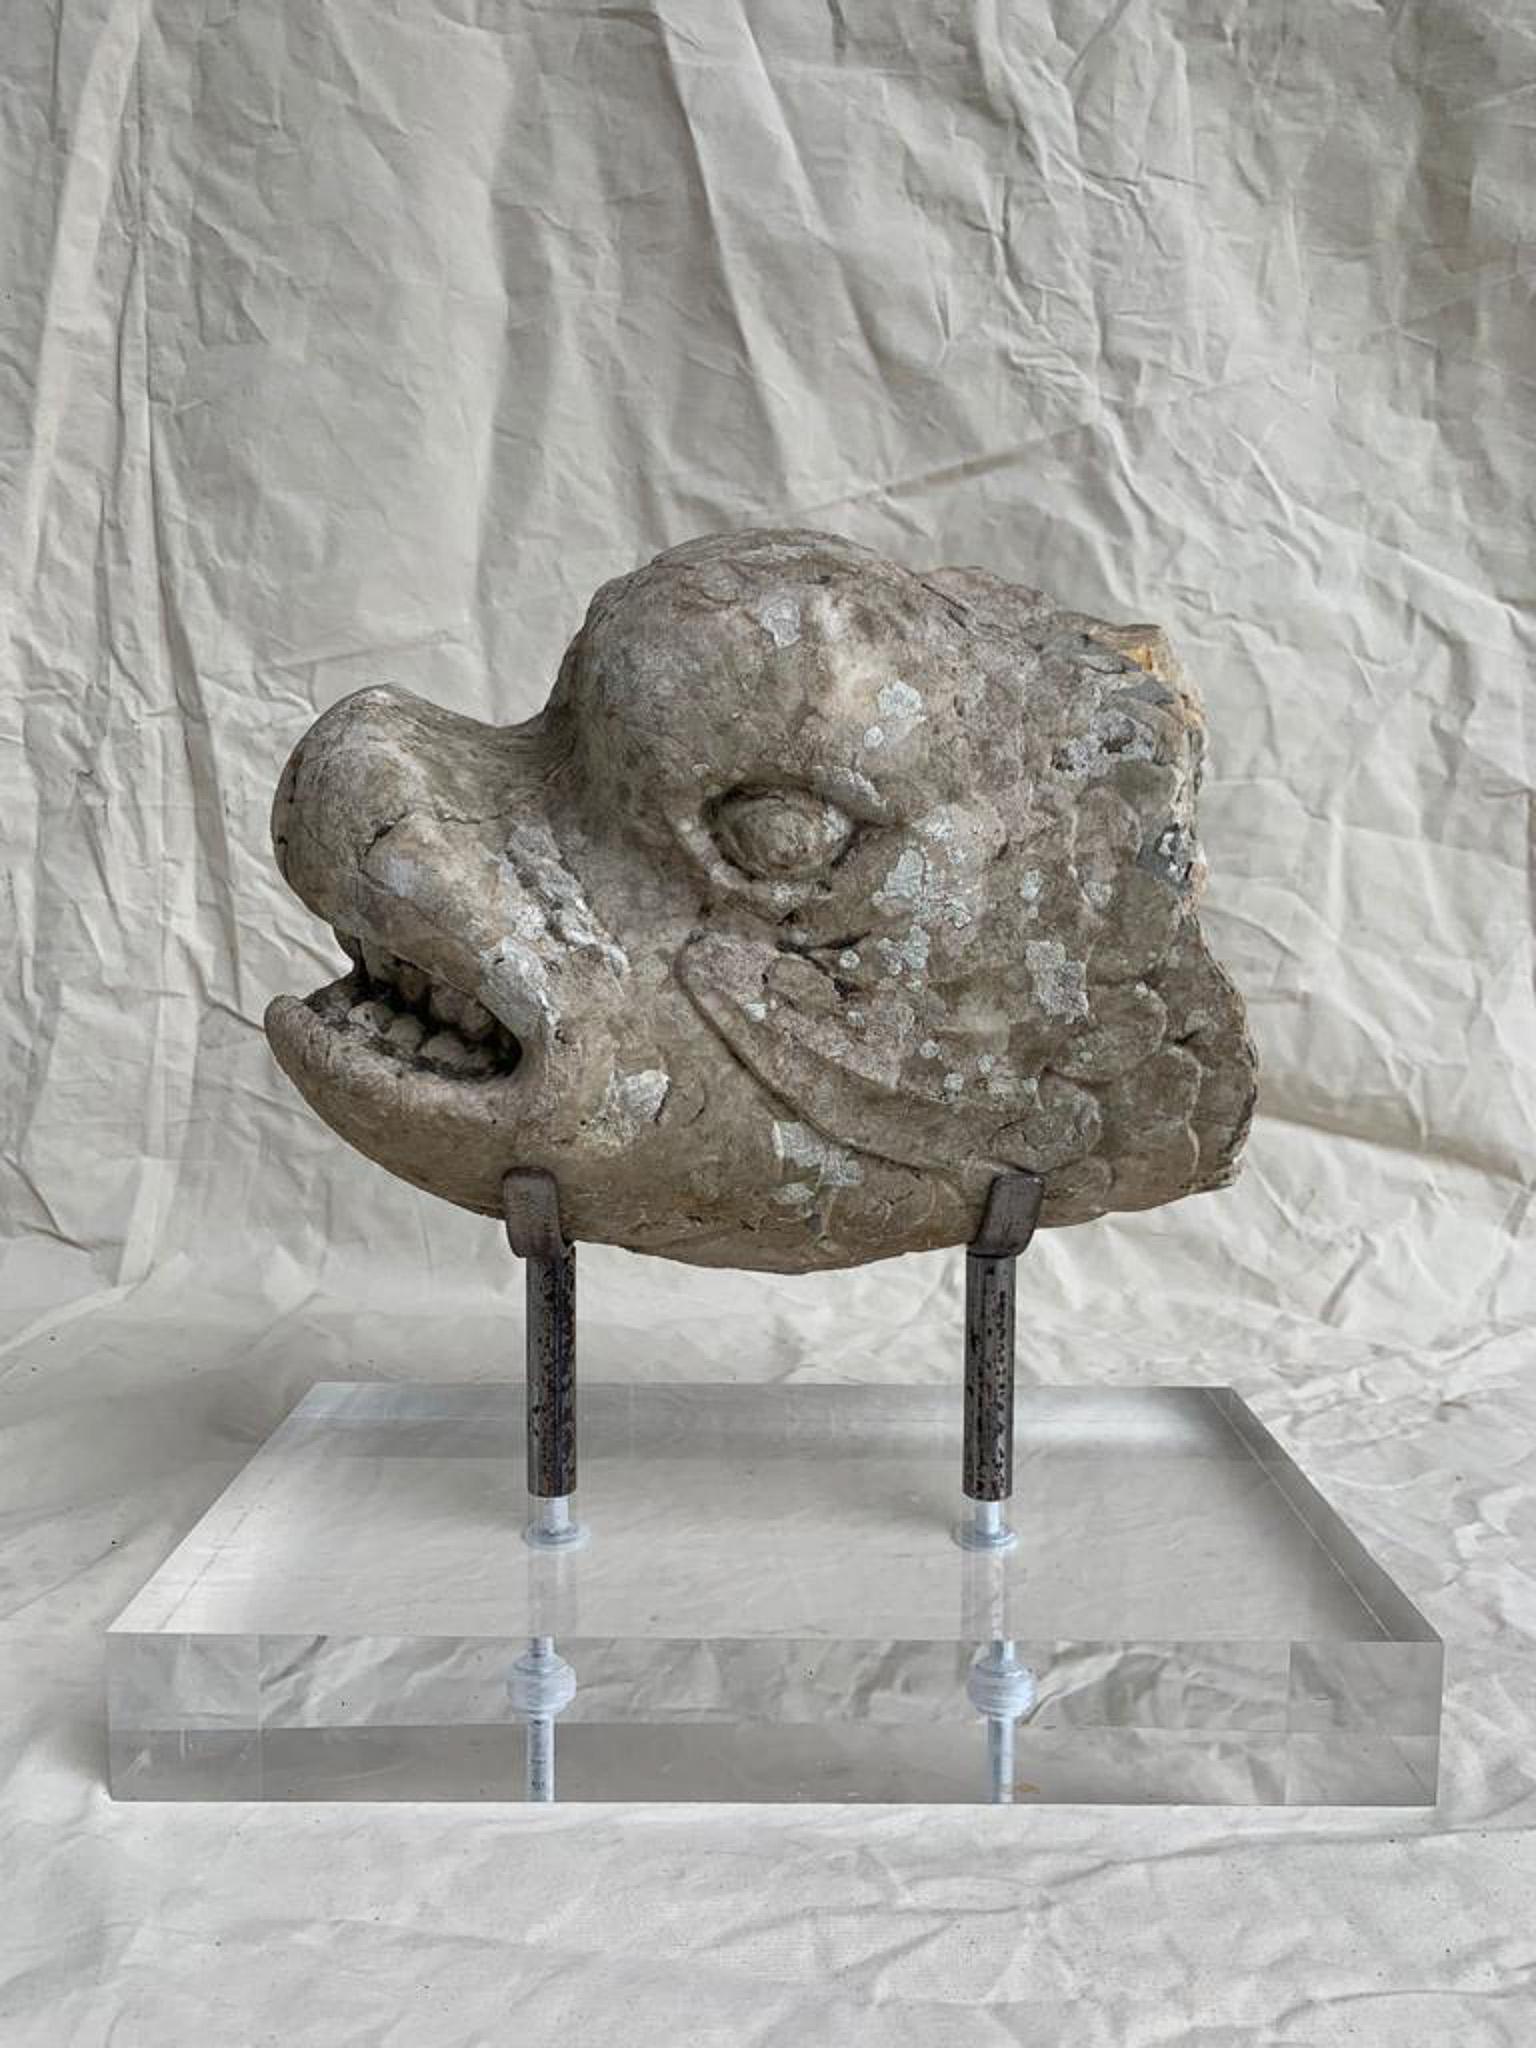 Carranca in lioz stone representing a dolphin Portugal 18th century